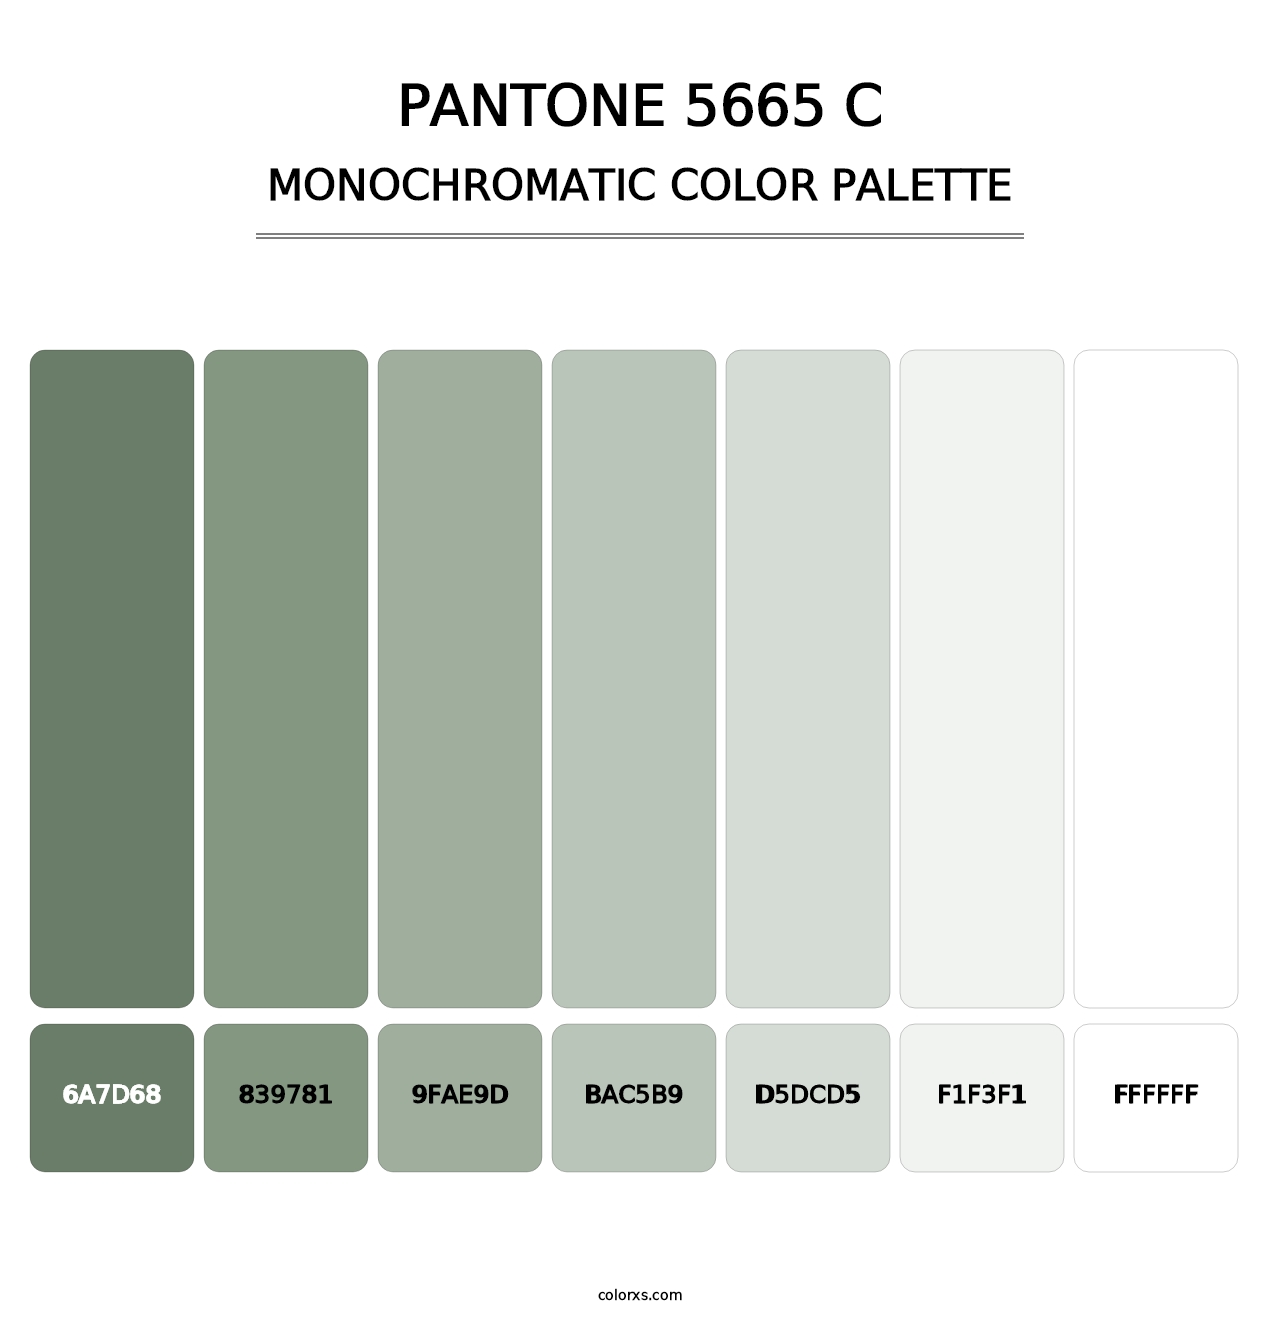 PANTONE 5665 C - Monochromatic Color Palette